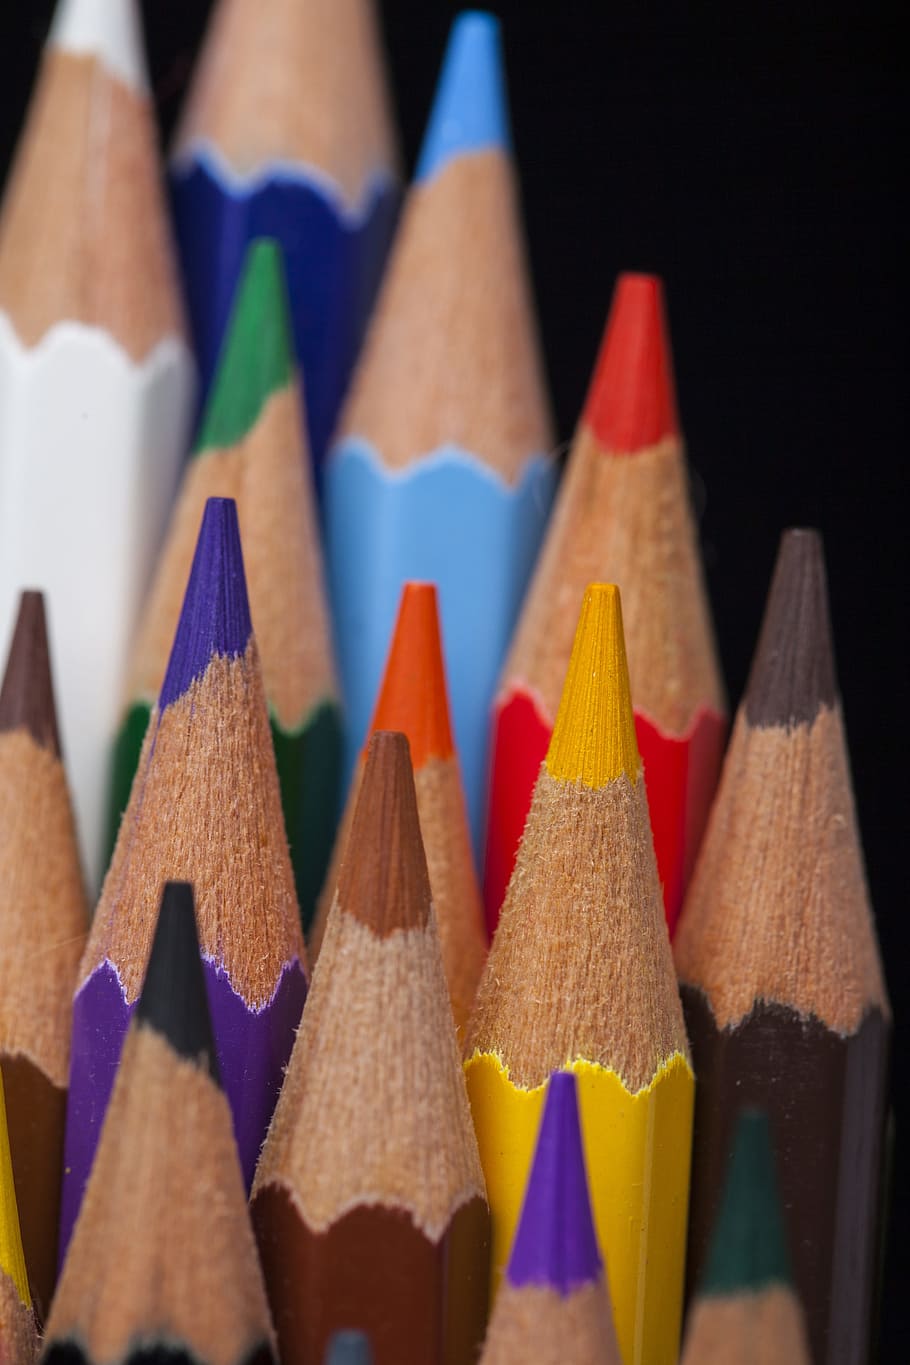 tutup, fotografi, pensil warna aneka warna, aneka warna, pensil warna, lot, pena, warna, pensil, untuk menulis